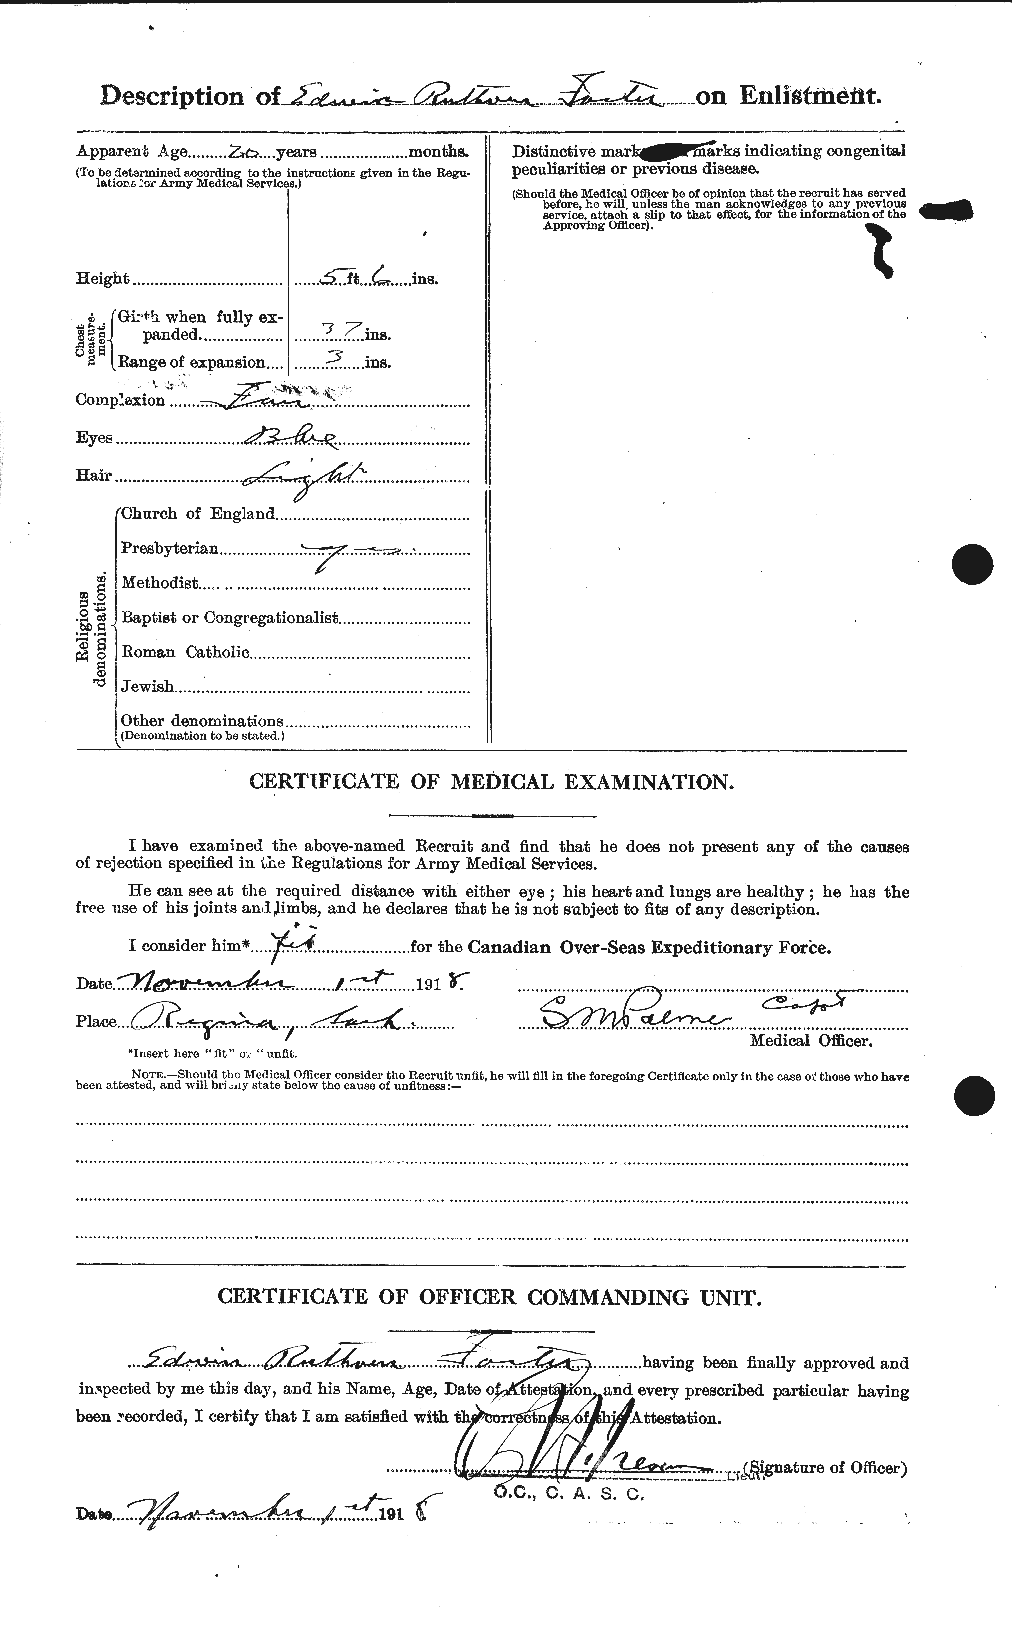 Dossiers du Personnel de la Première Guerre mondiale - CEC 330593b